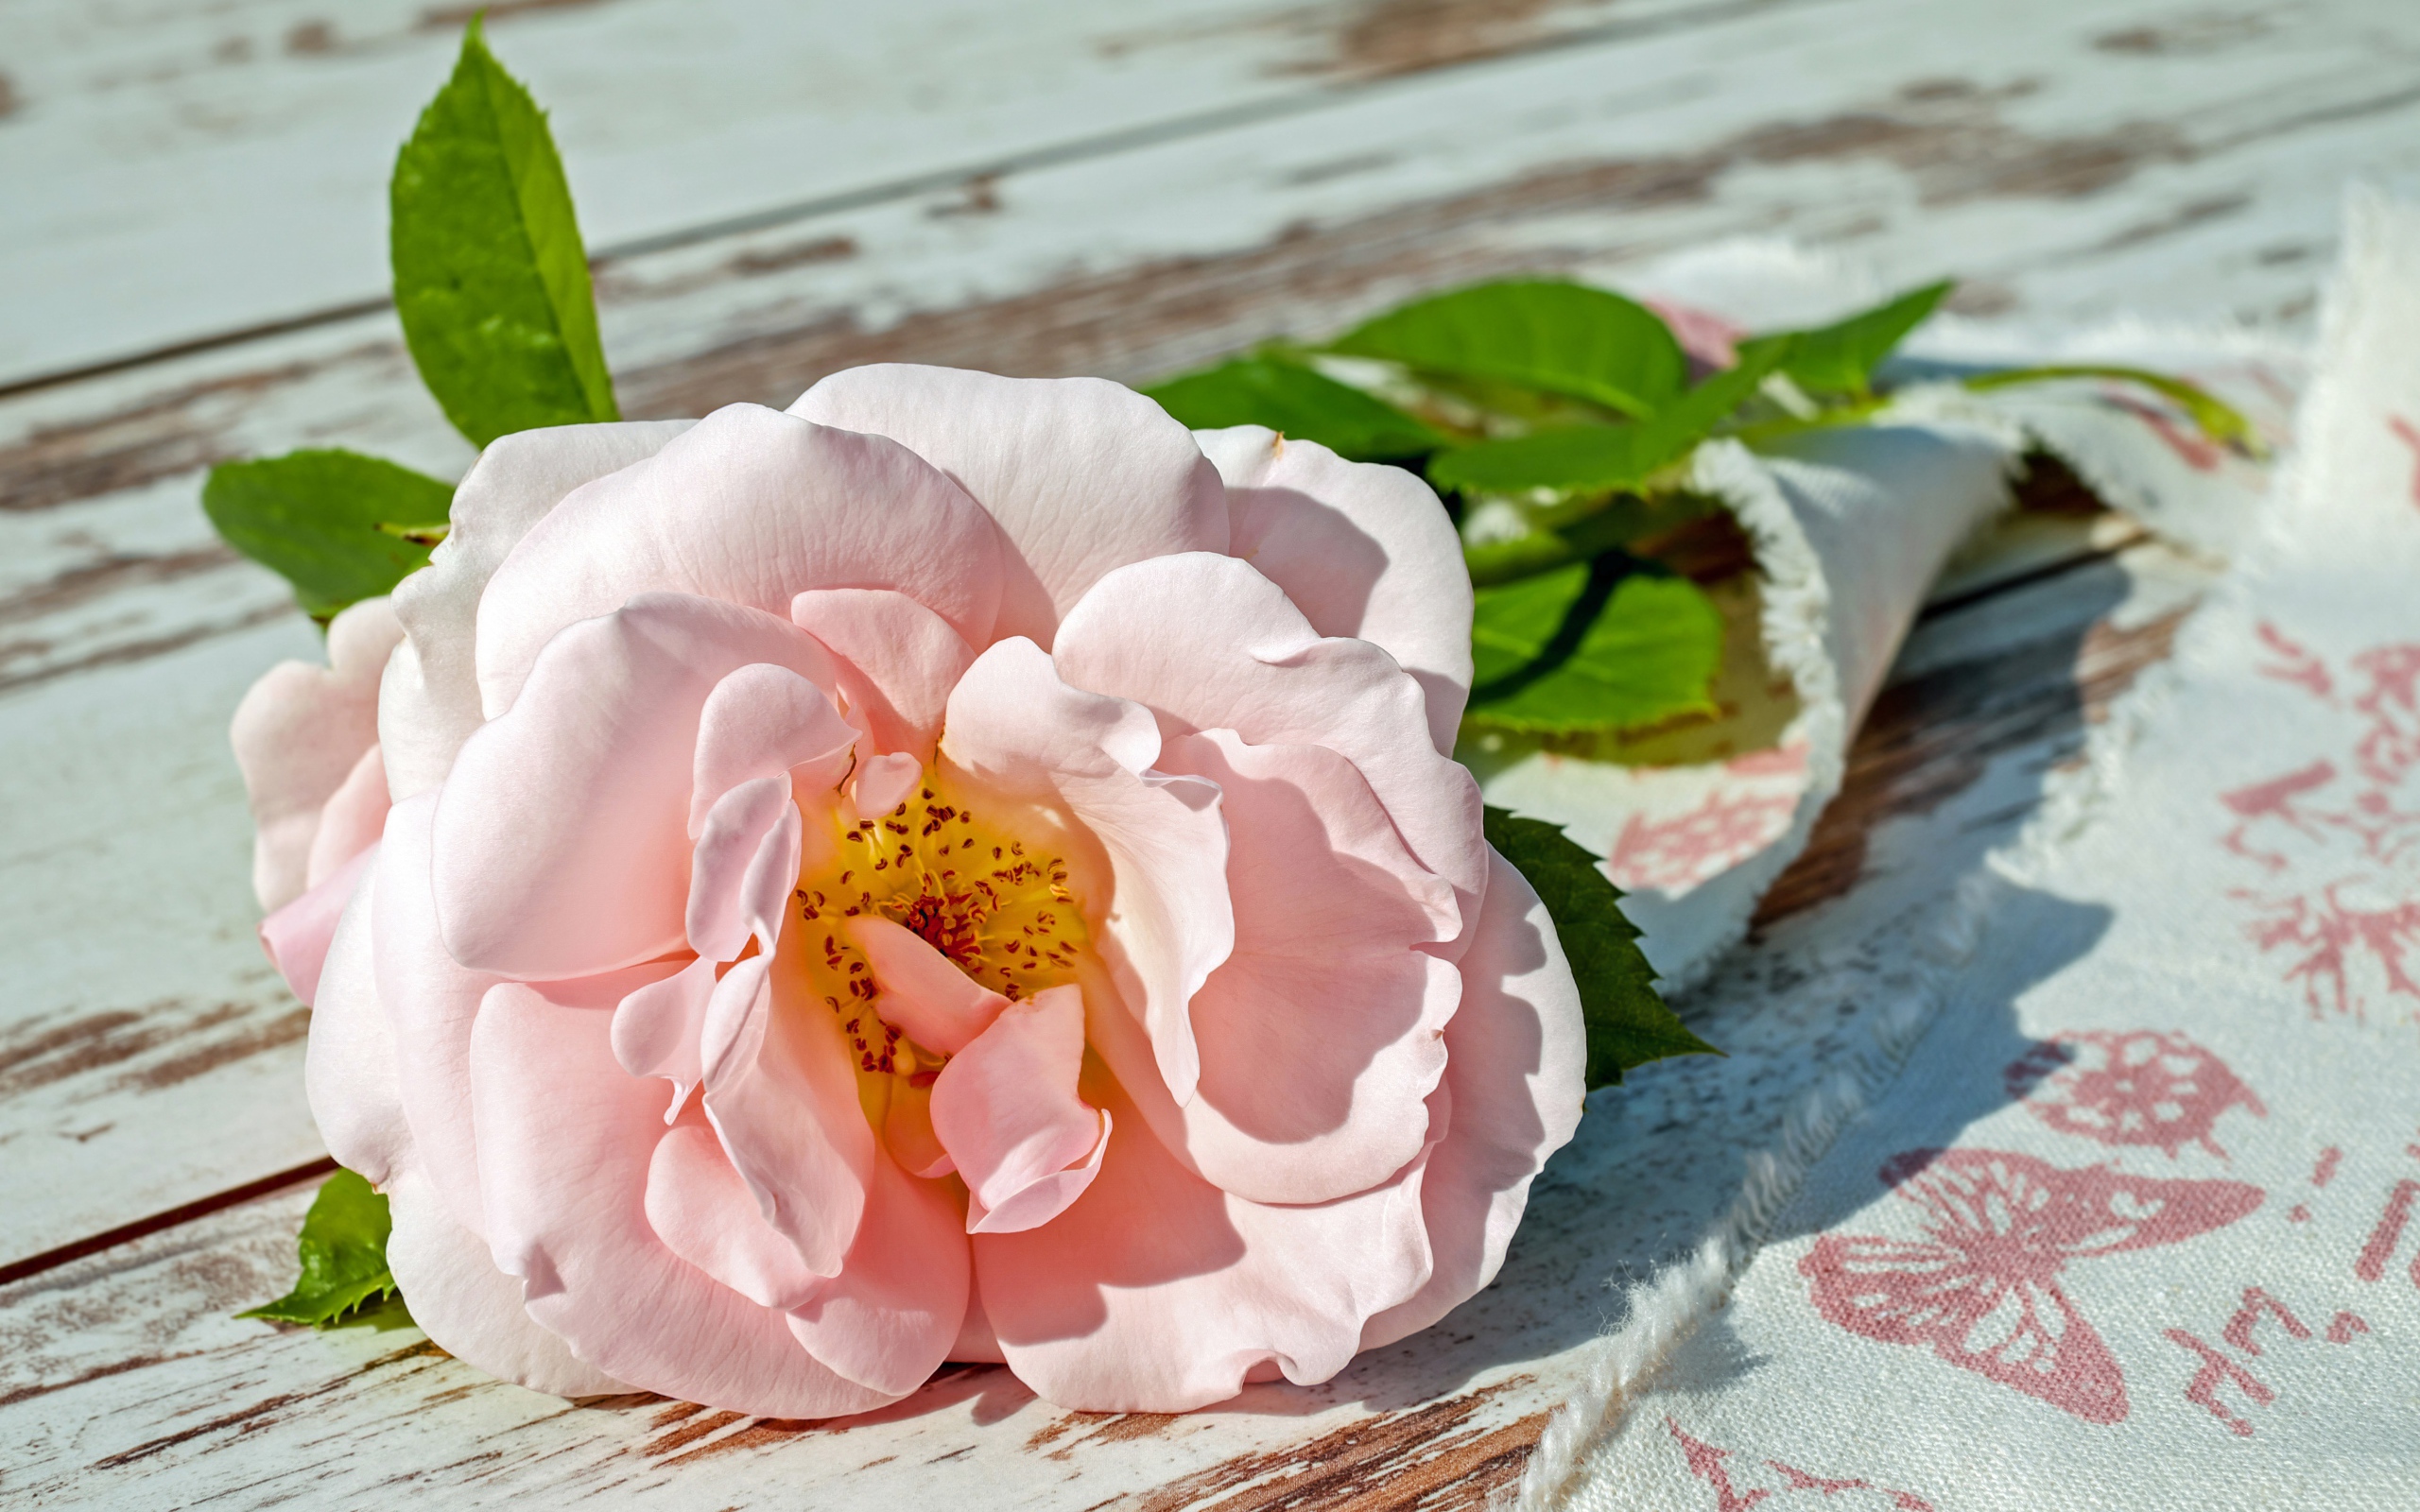 A pink garden rose lies on a bench